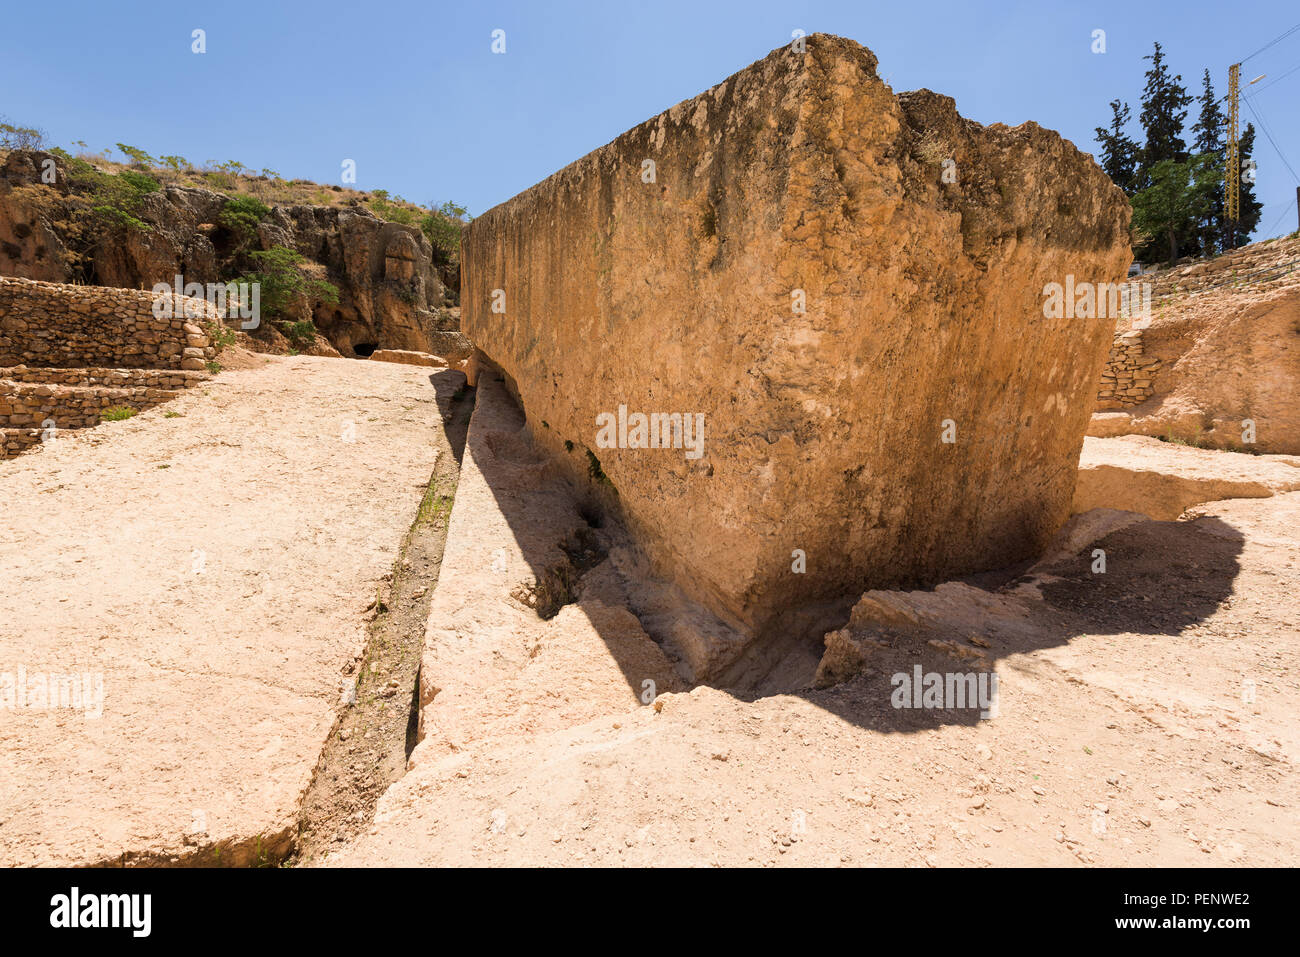 La piedra de la embarazada es la piedra tallada más grande del mundo y establece en su cantera inconclusa, cerca del complejo de templos romanos de Baalbek, en el Líbano. Foto de stock